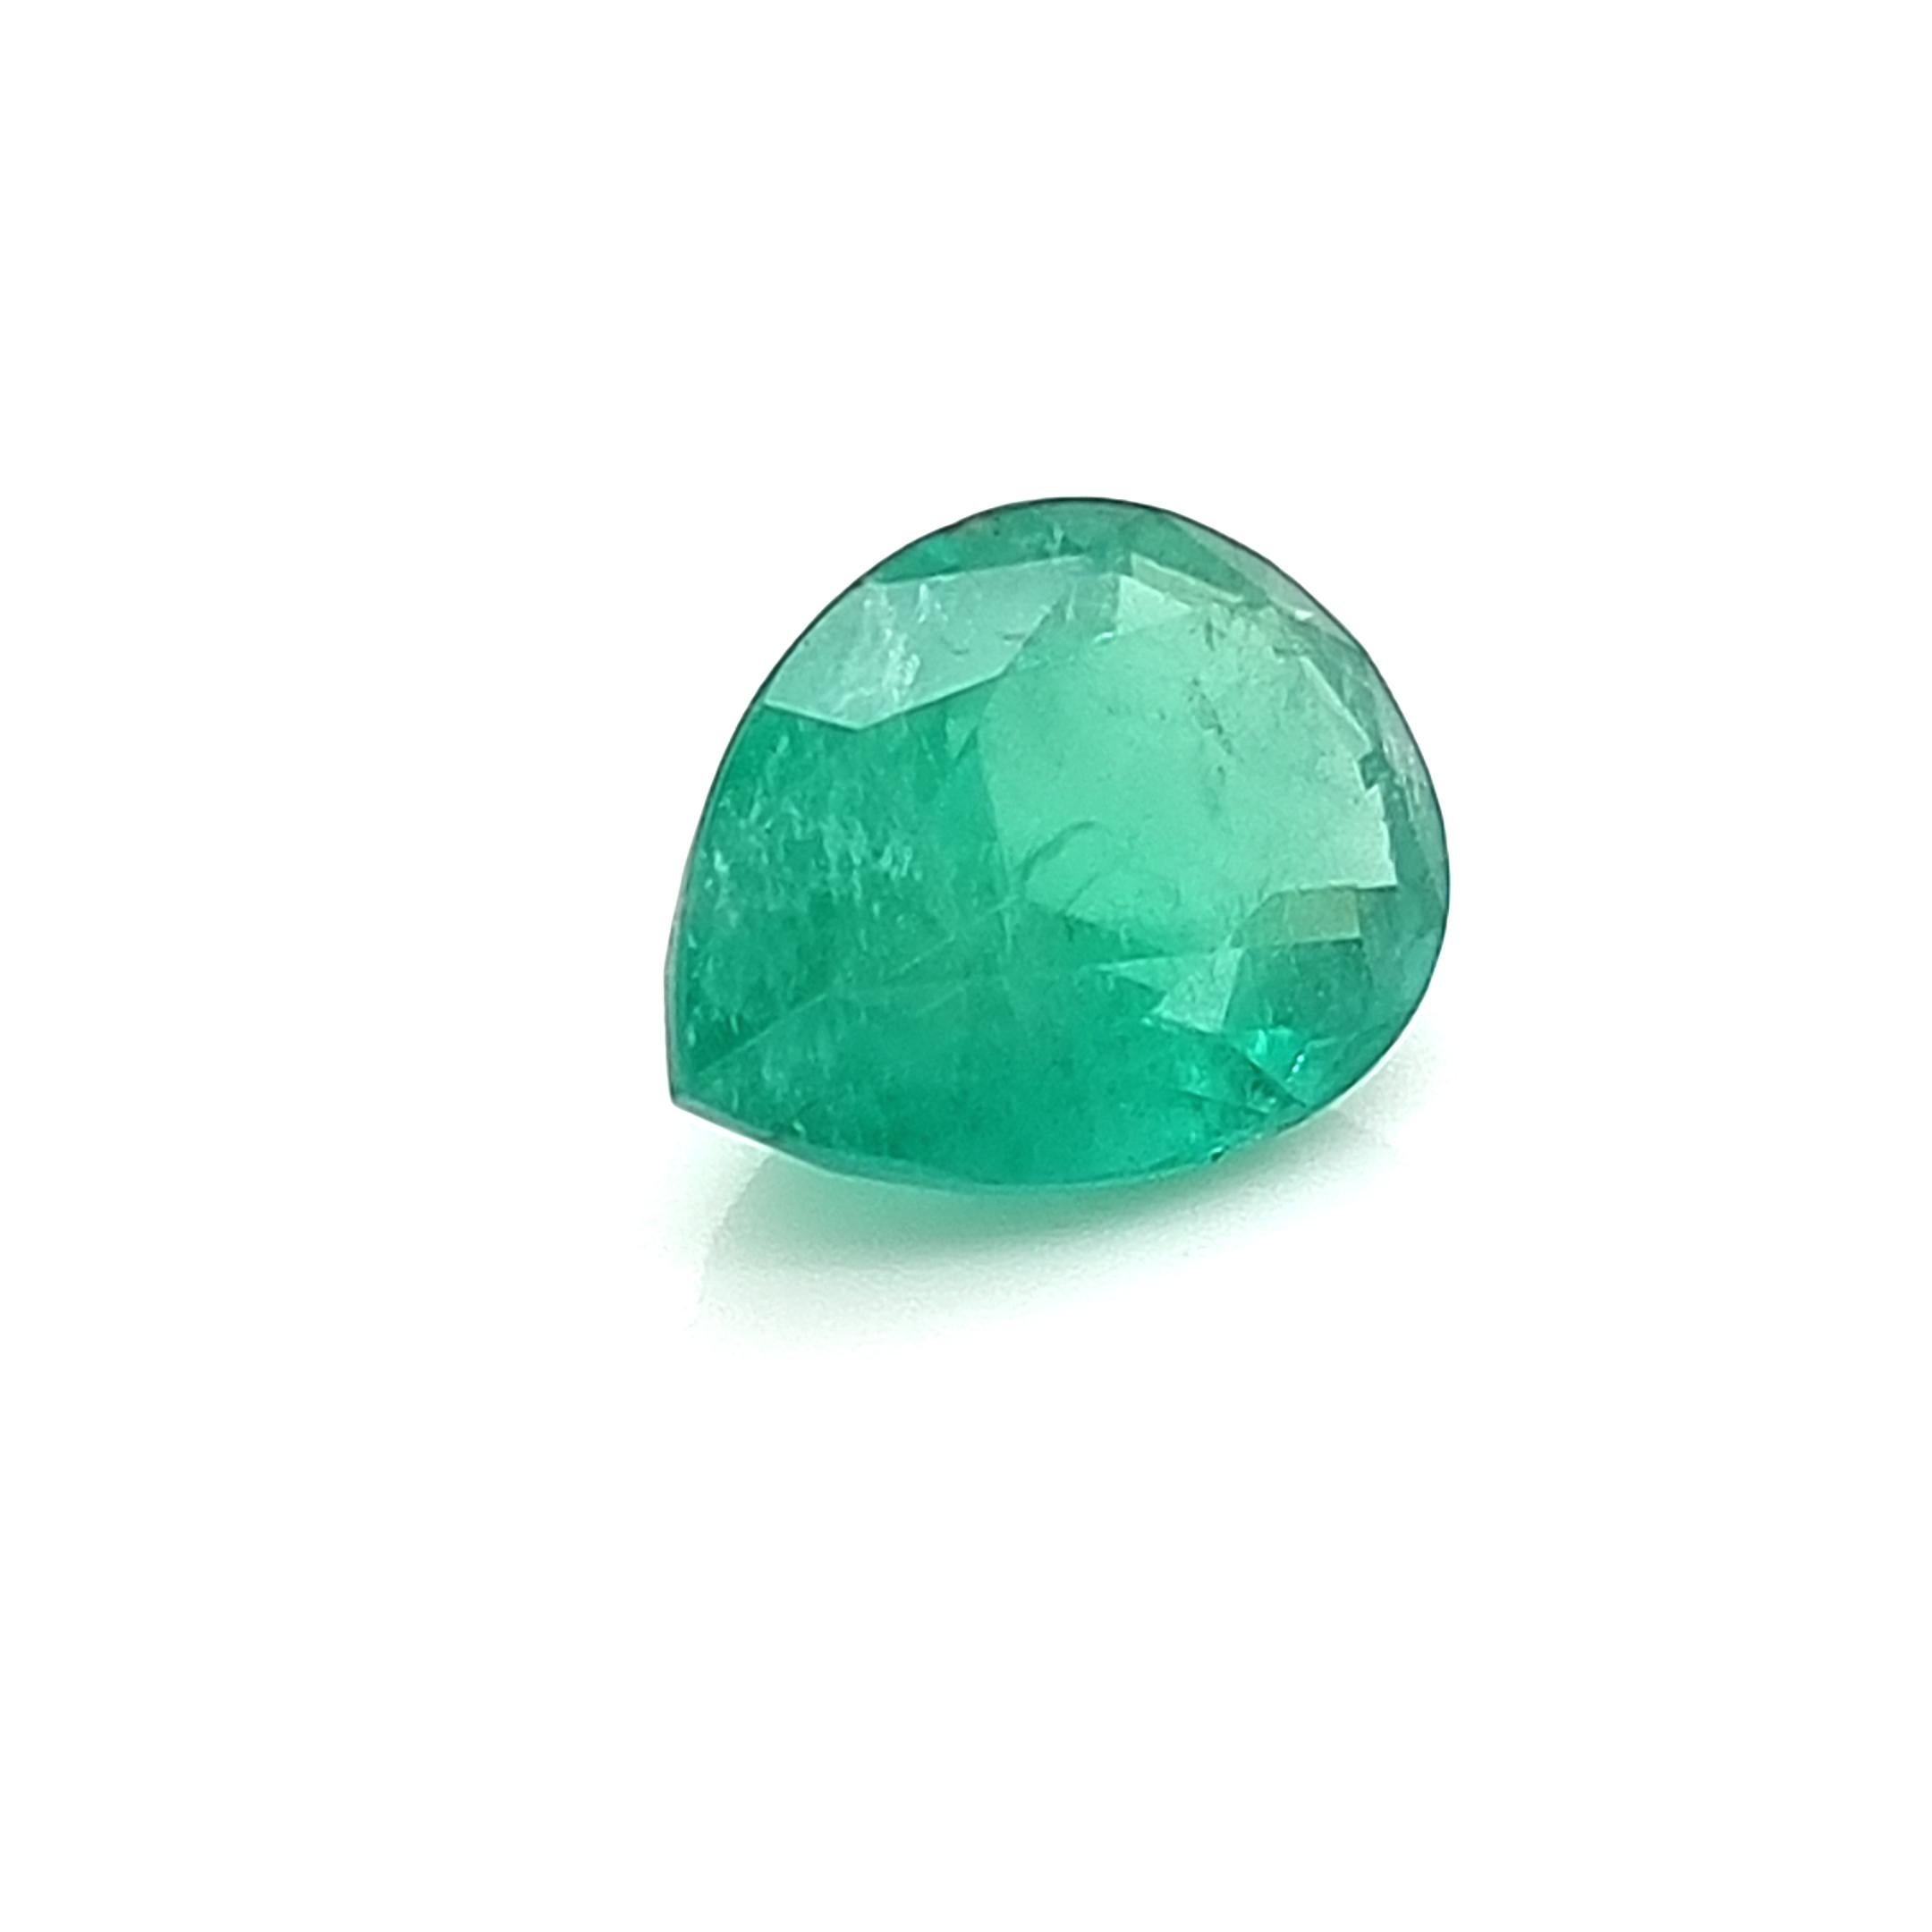 Zambian emerald.

17.86 x 12.26 x 8.29 mm

Treatment - Insignificant

Certification - GFCO Laboratory